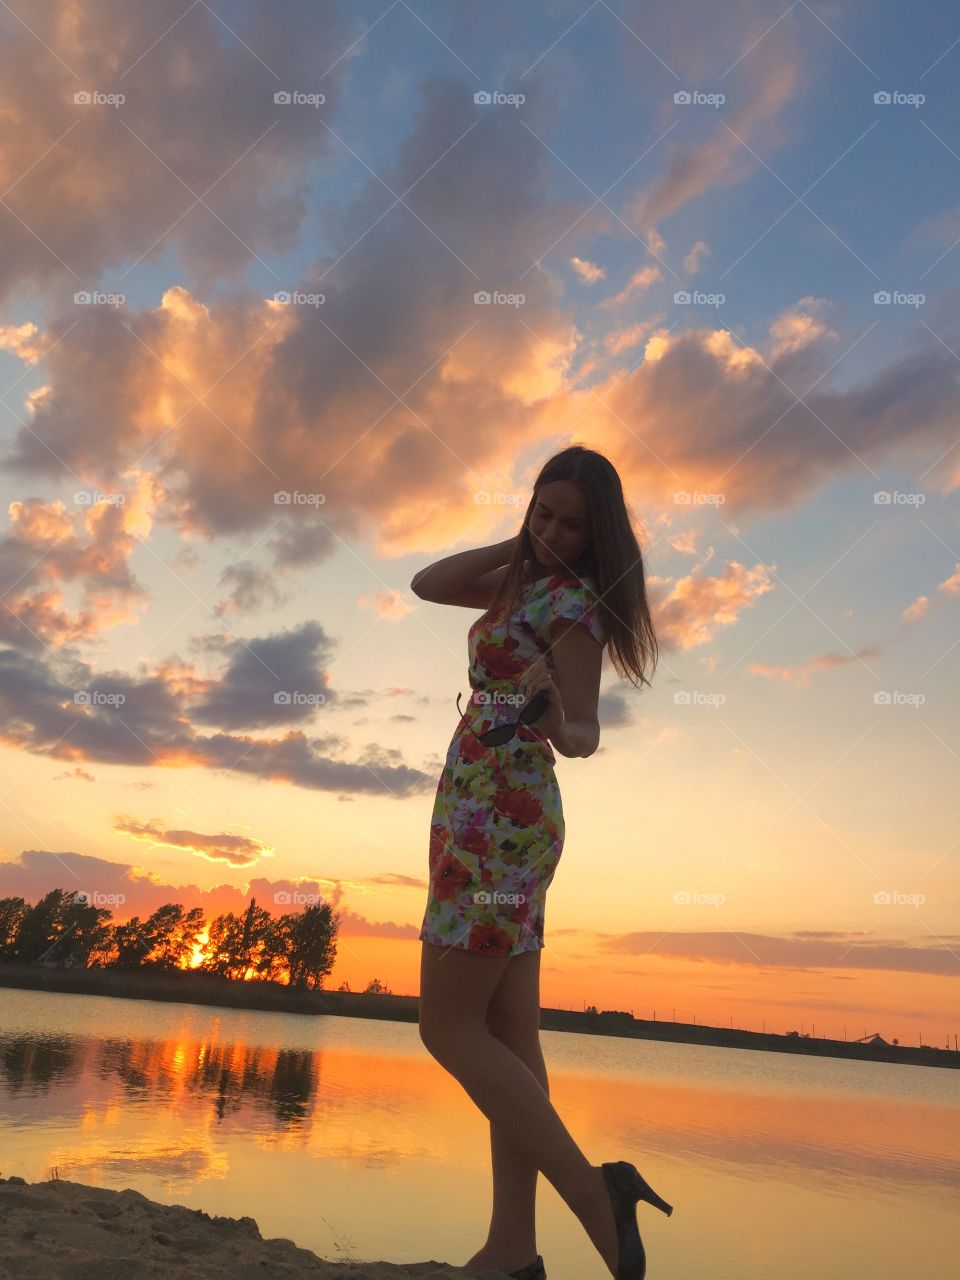 Woman posing near lake